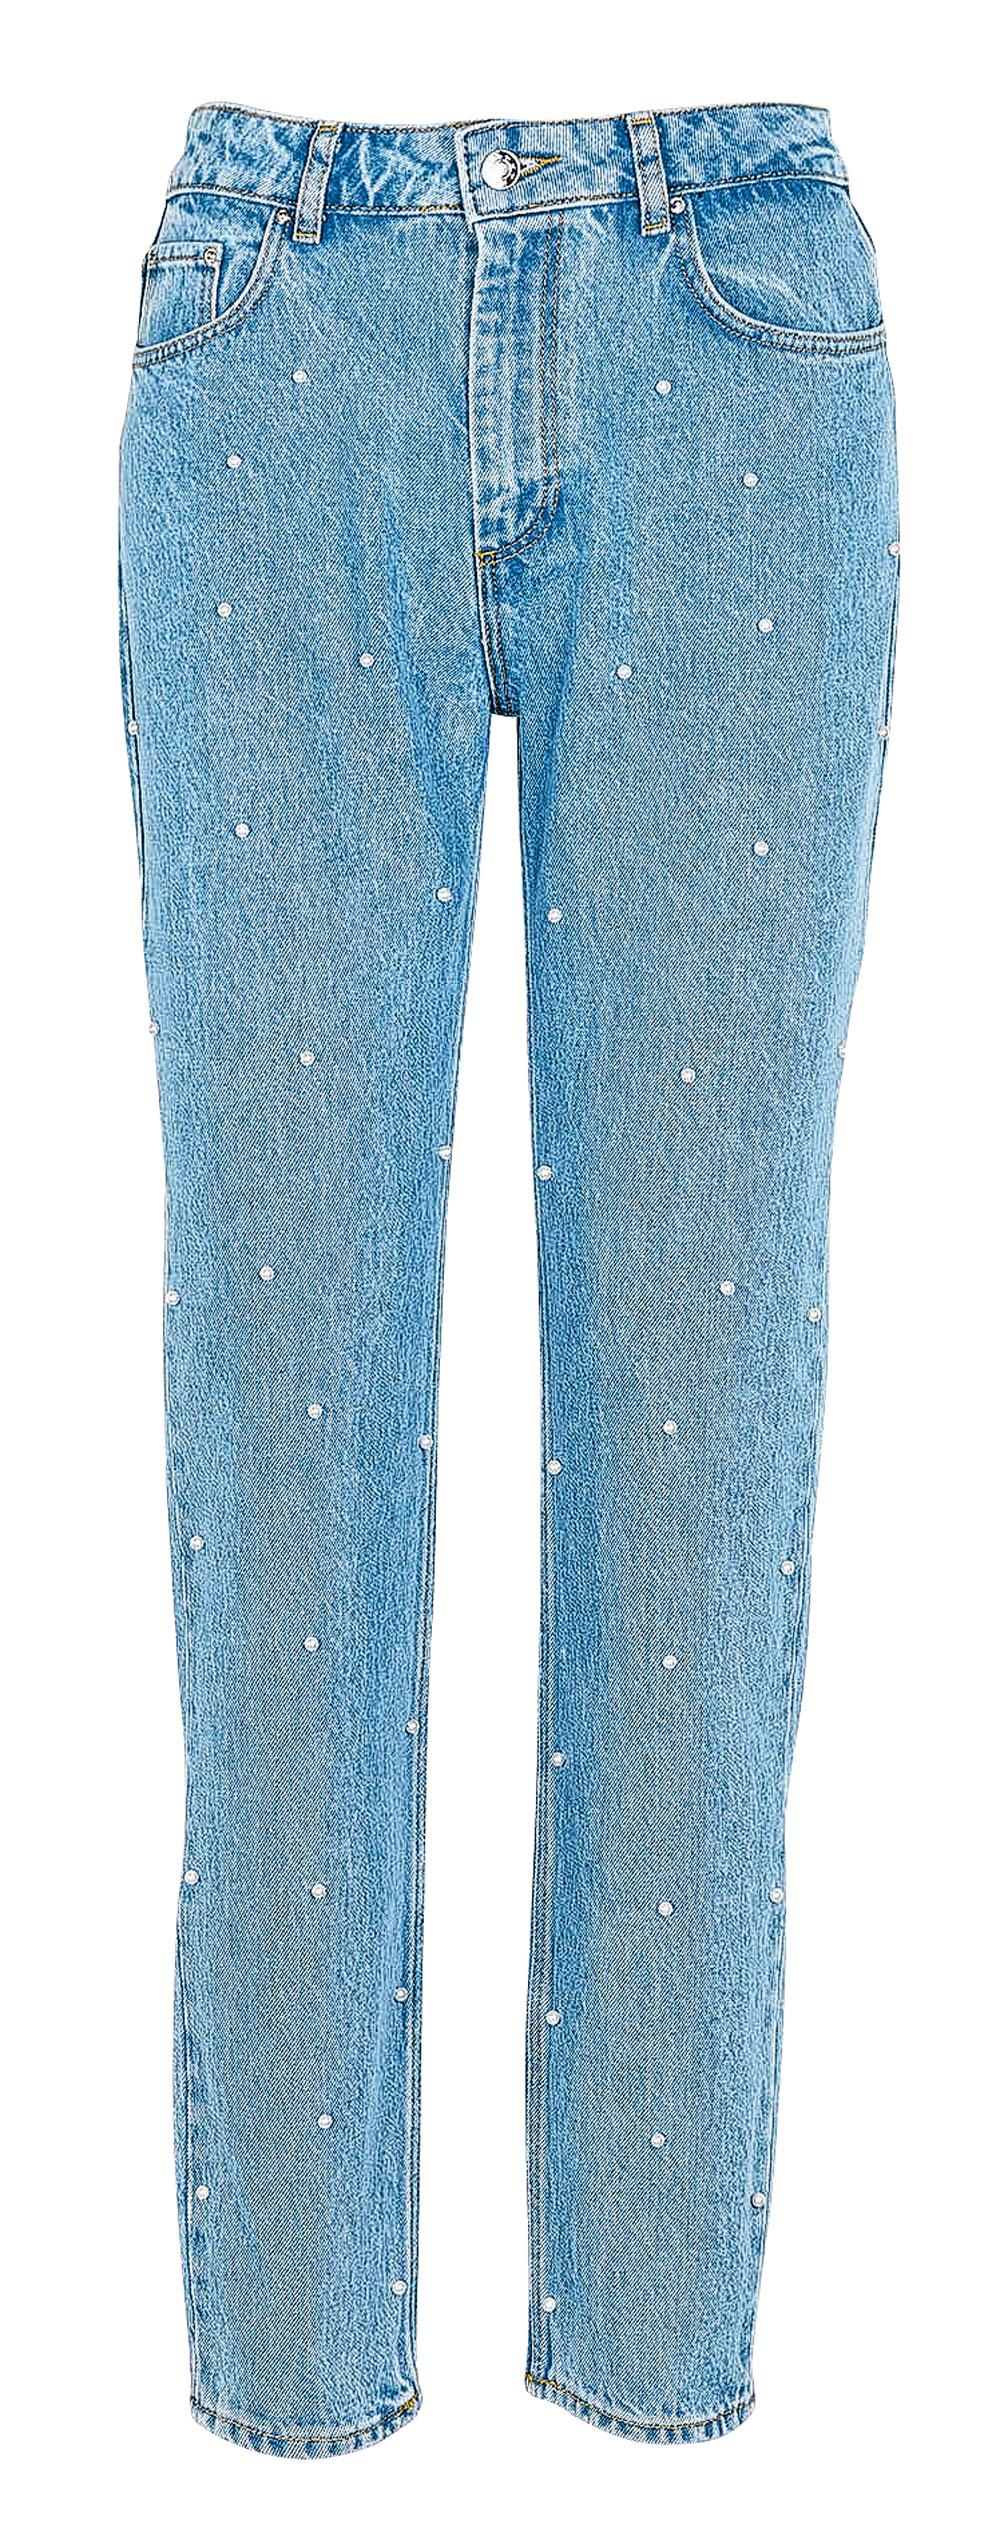 Jeans boyfriend en coton rebrodé de perles,  Claudie Pierlot, 155 euros